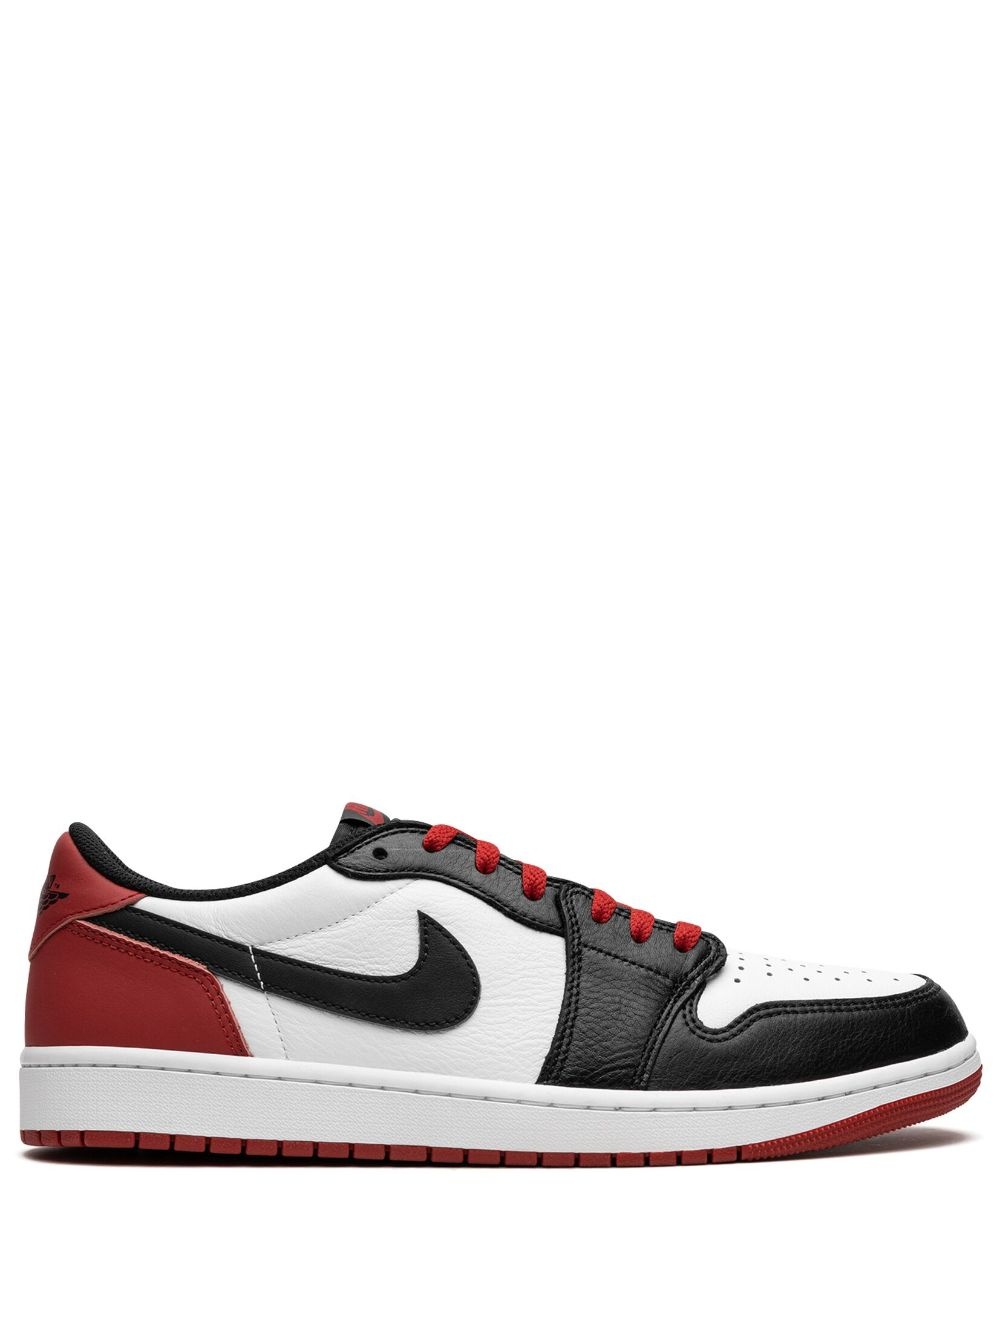 Air Jordan 1 Low OG "Black Toe" sneakers - 1